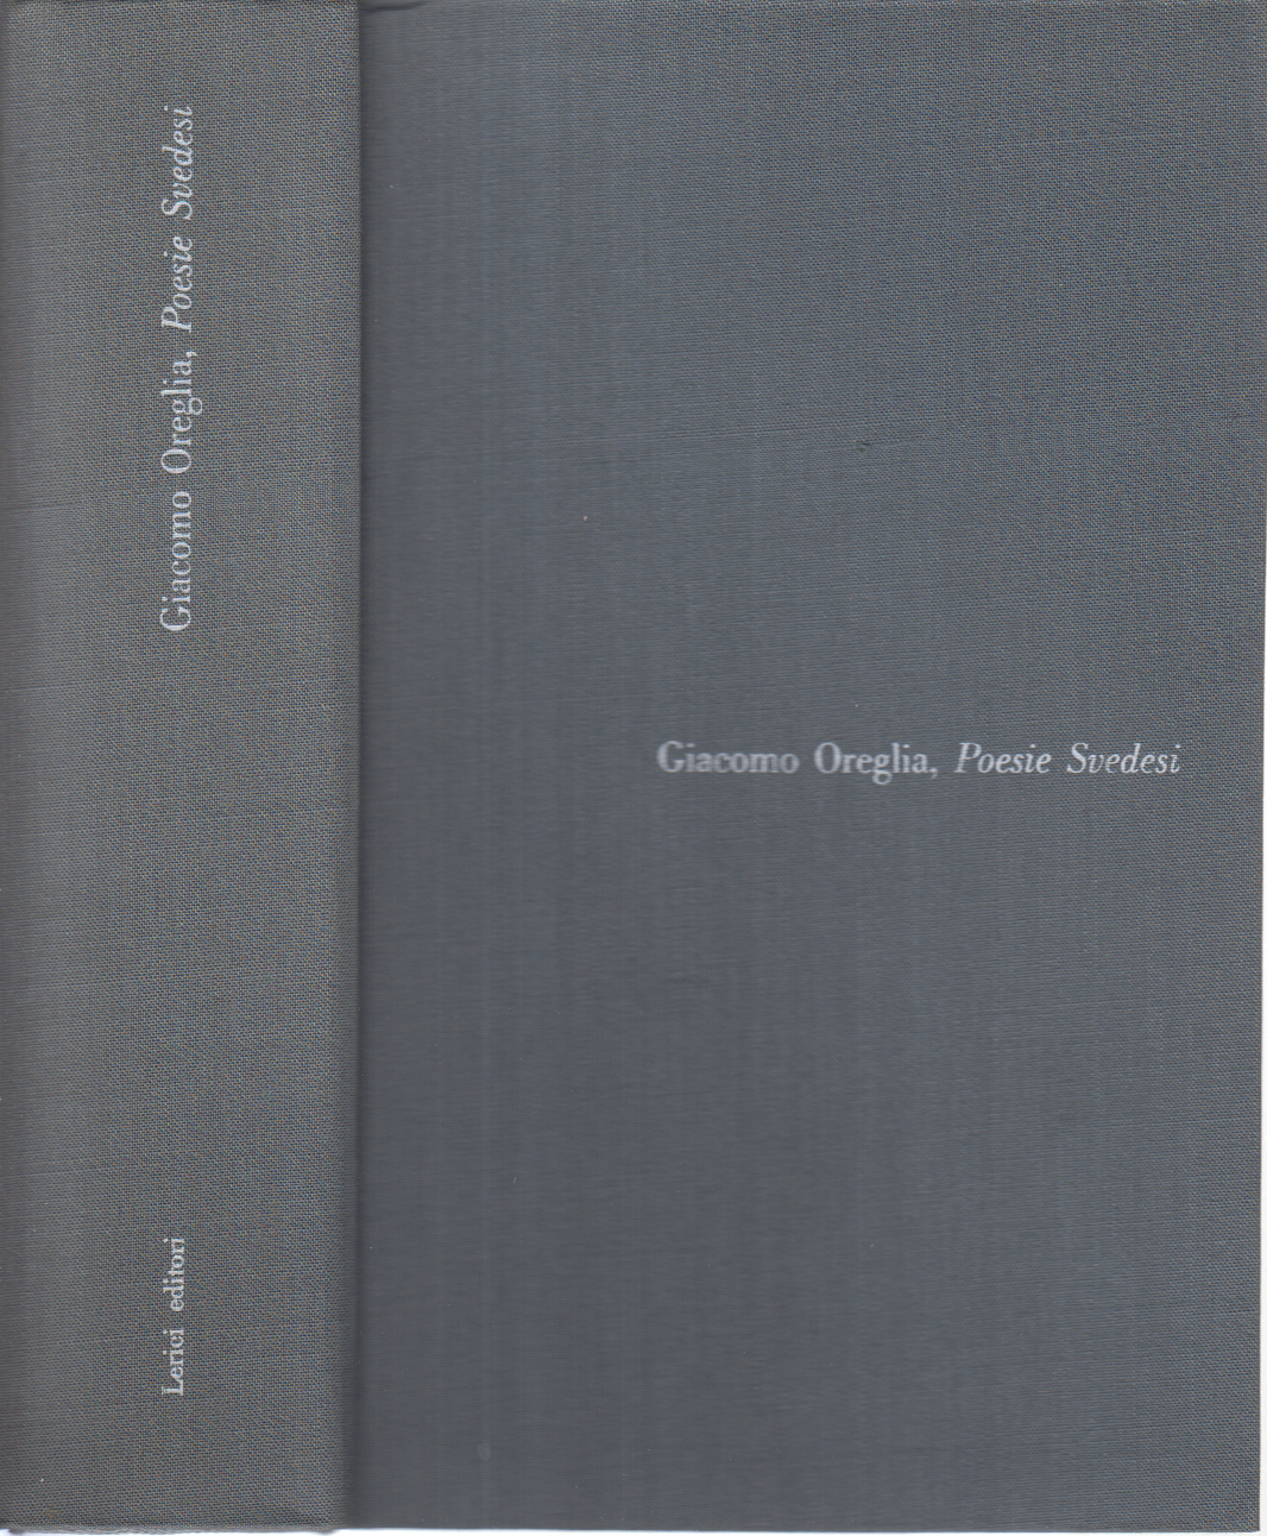 Poesía sueca, Giacomo Oreglia